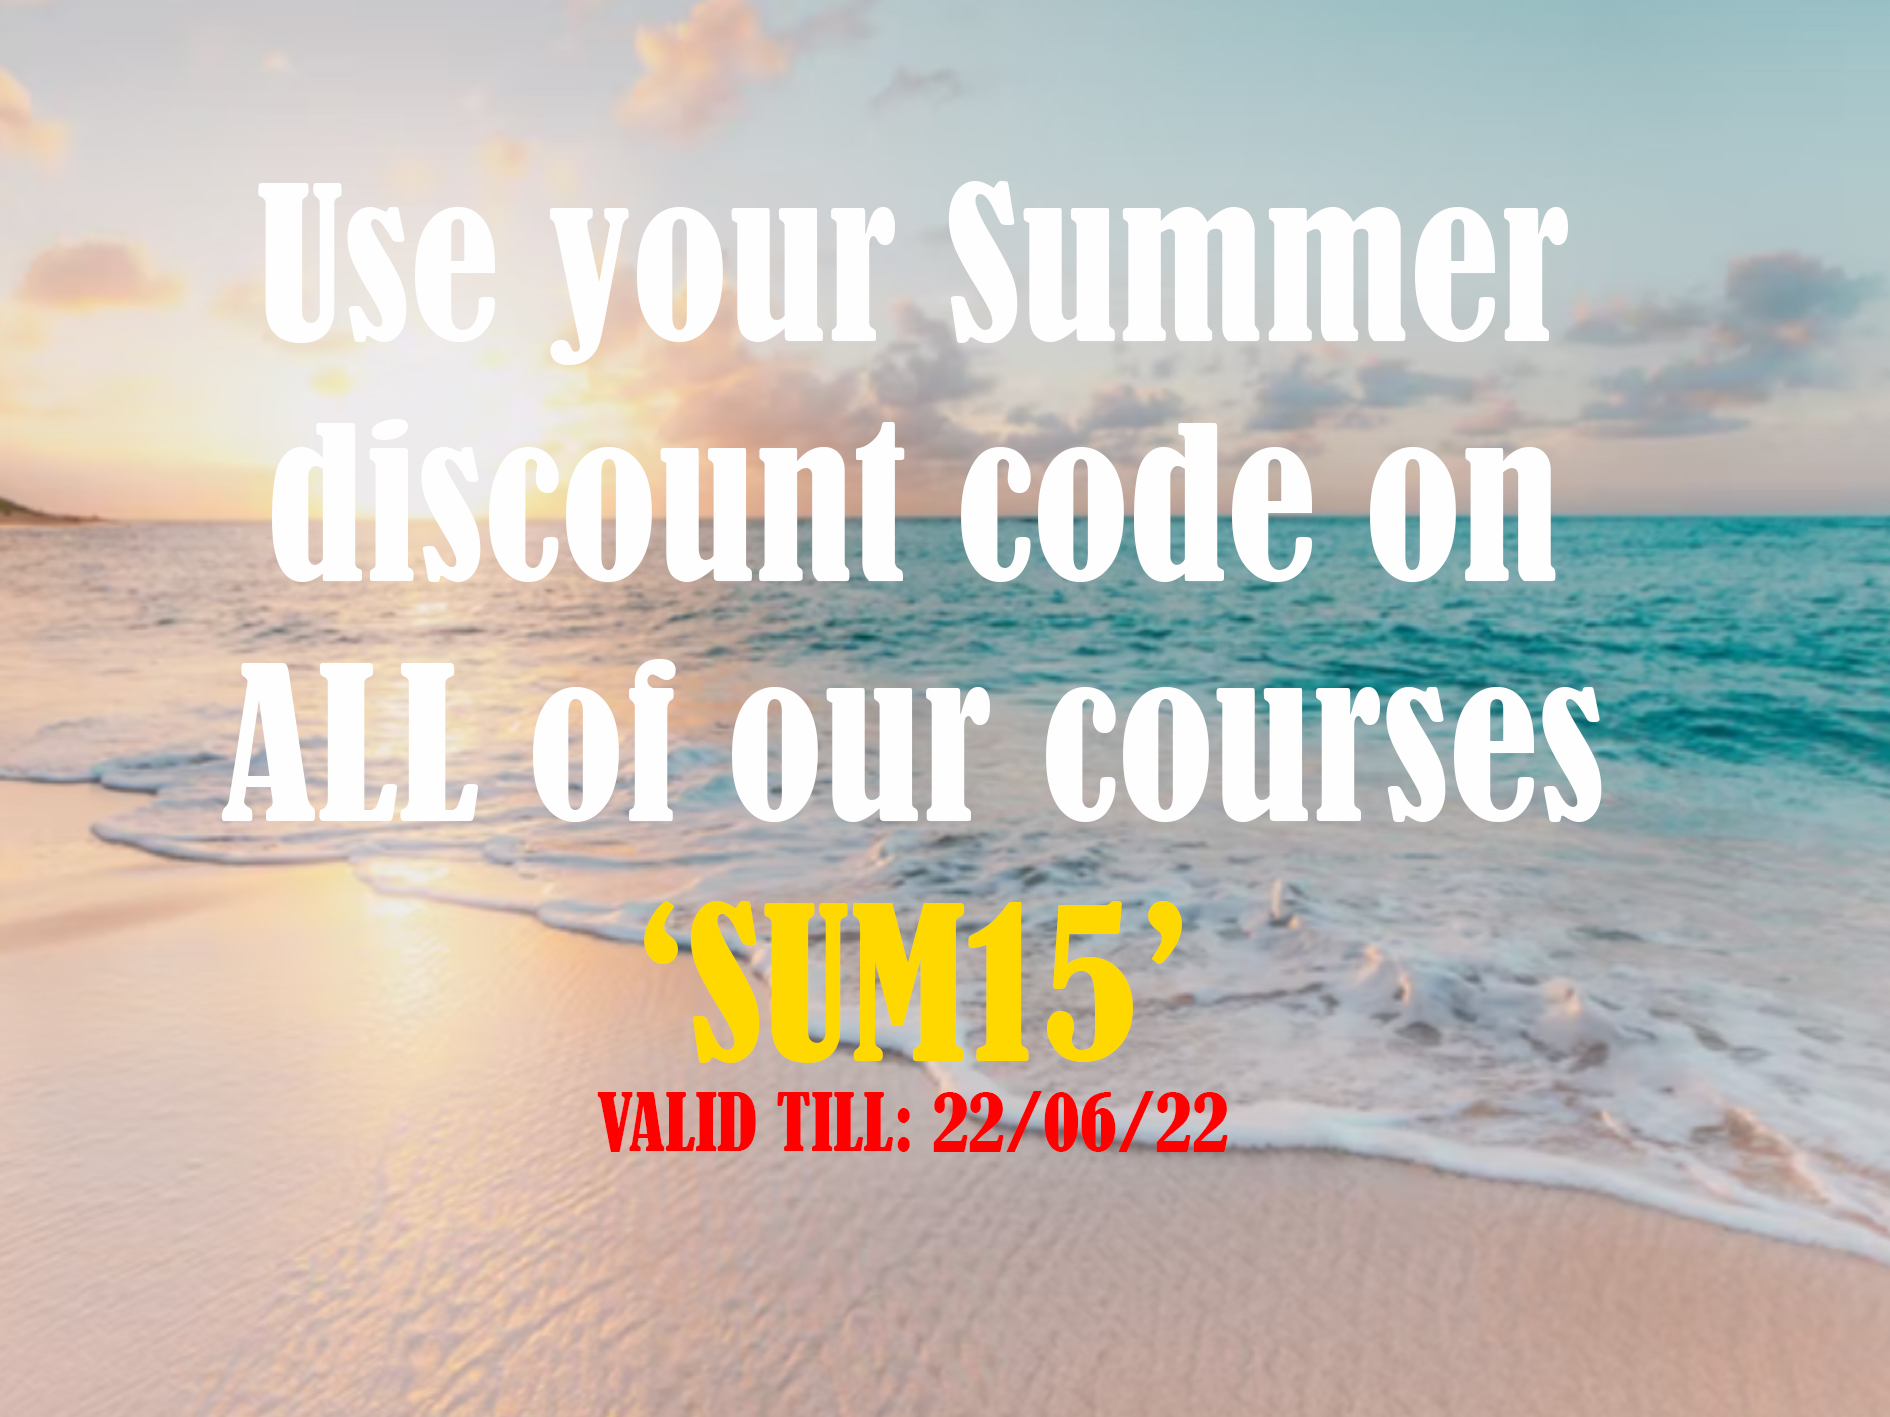 summertime discount sun15